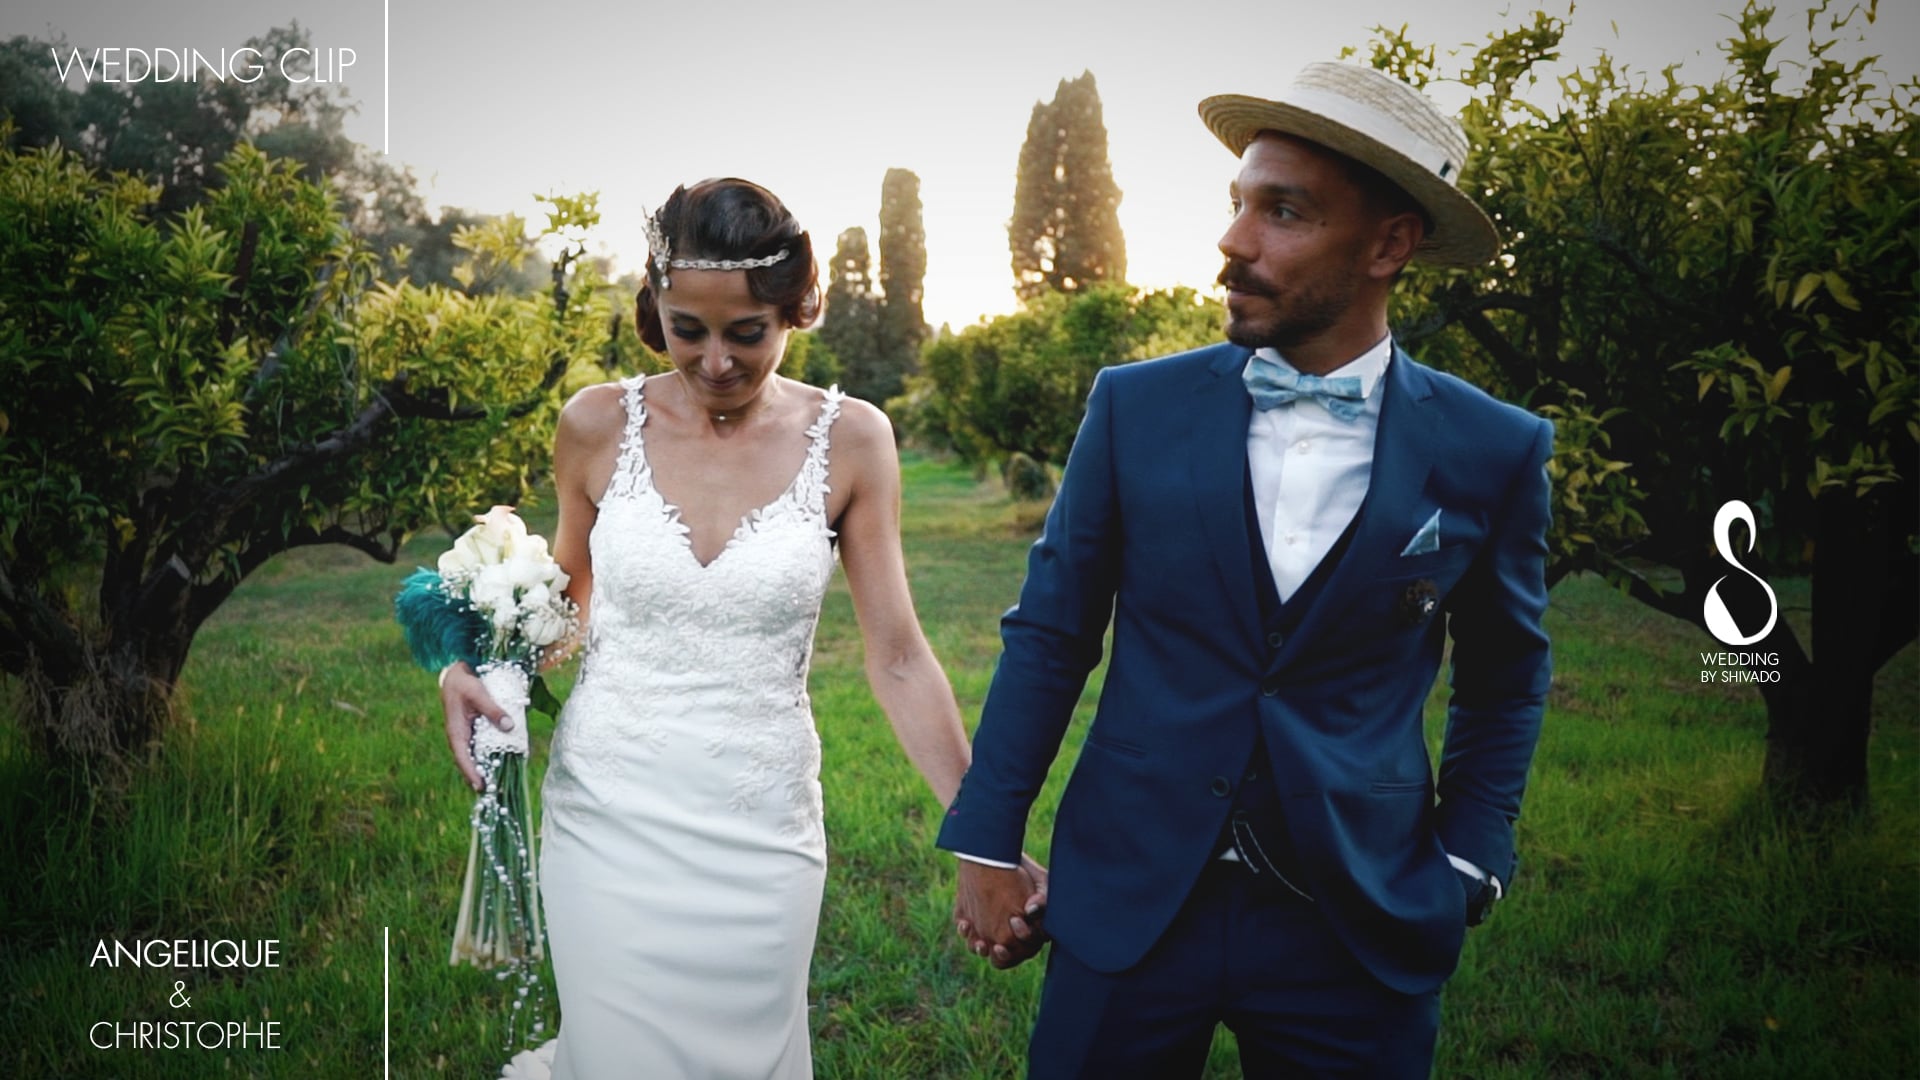 Wedding clip - Angélique & Christophe 2021.mov